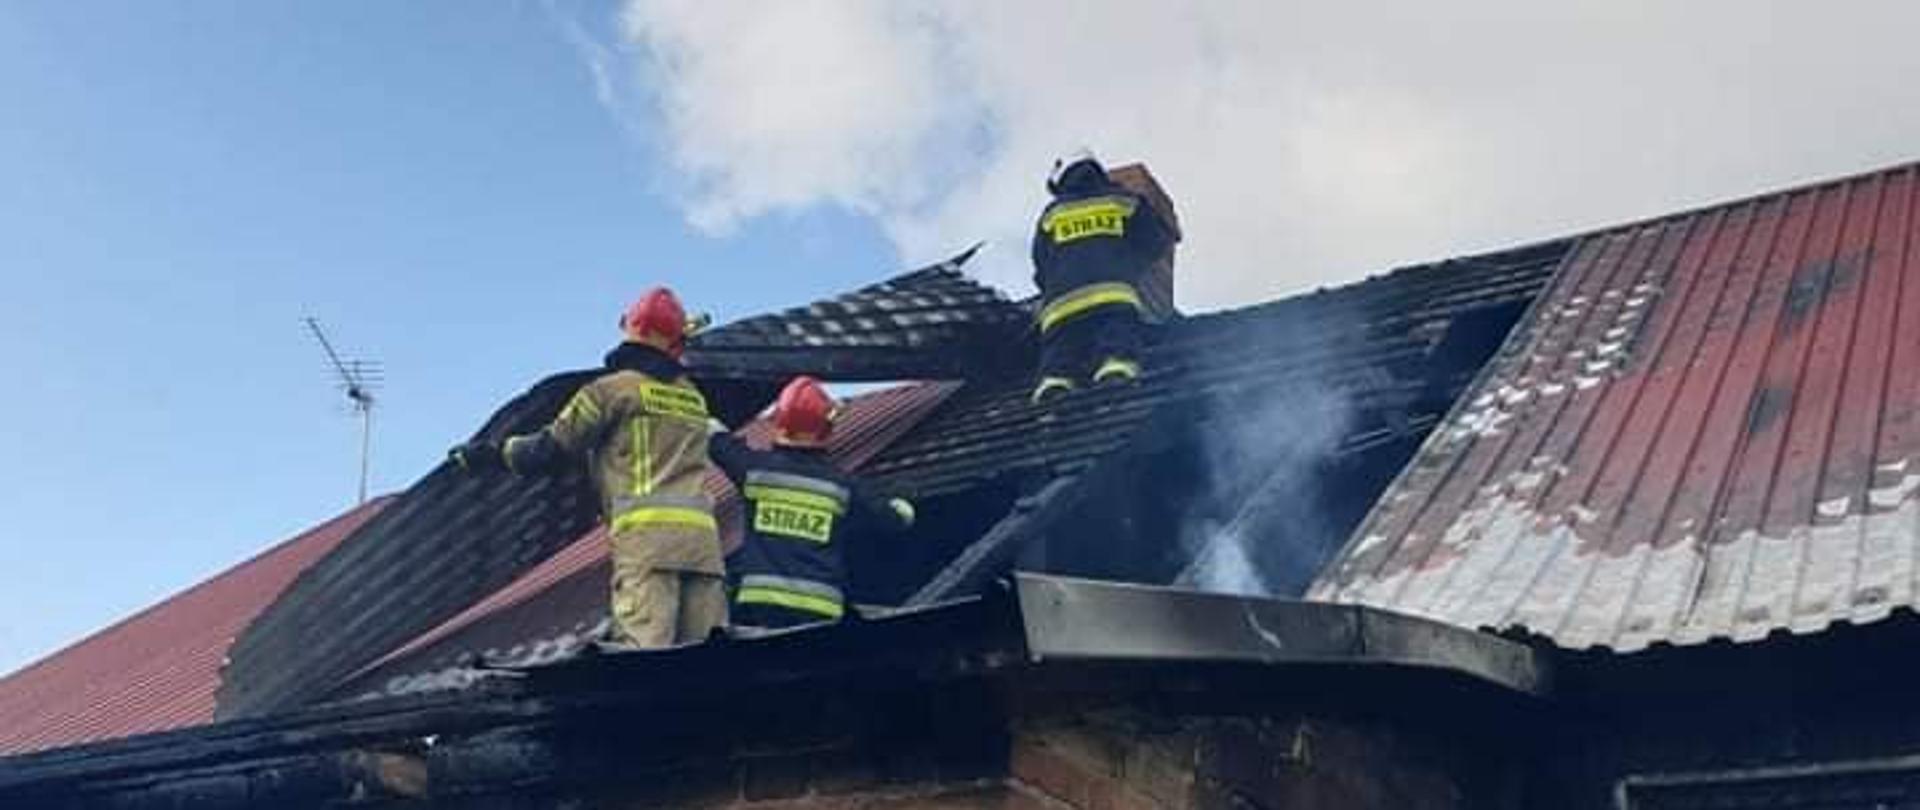 Strażacy pracujący na dachu przy demontażu nadpalonej konstrukcji dachu. Futryny drzwi i okien są nadpalone. Na blachodachówce widać ślady działania ognia.